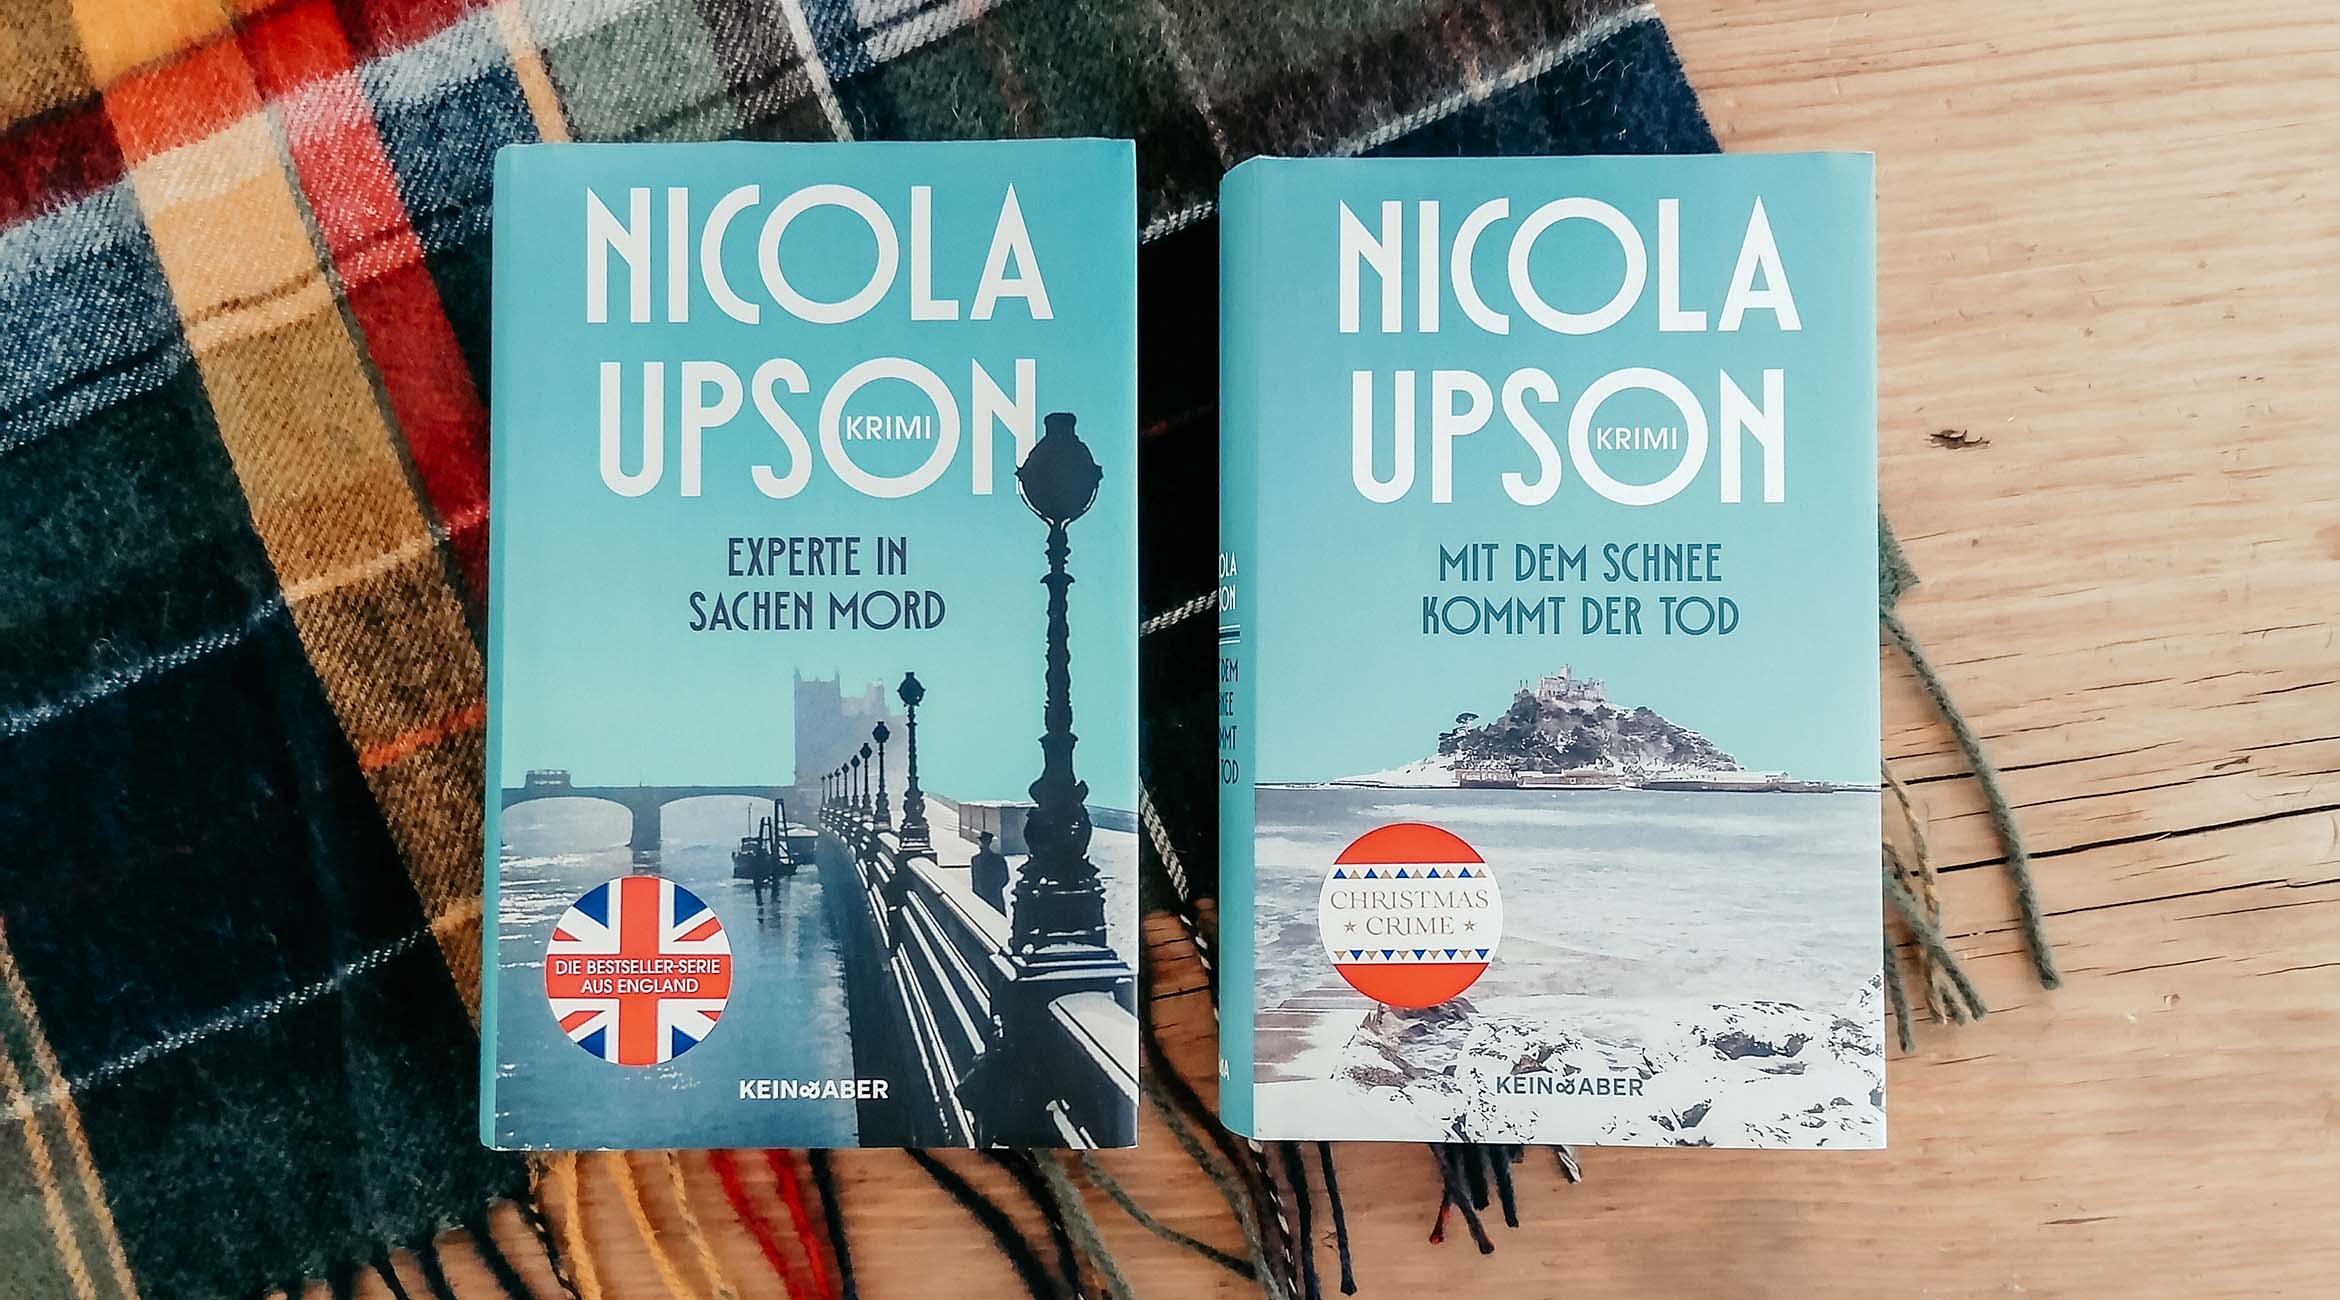 Nicola Upson: Eine Krimi-Reihe über die Krimi-Autorin Josephine Tey!